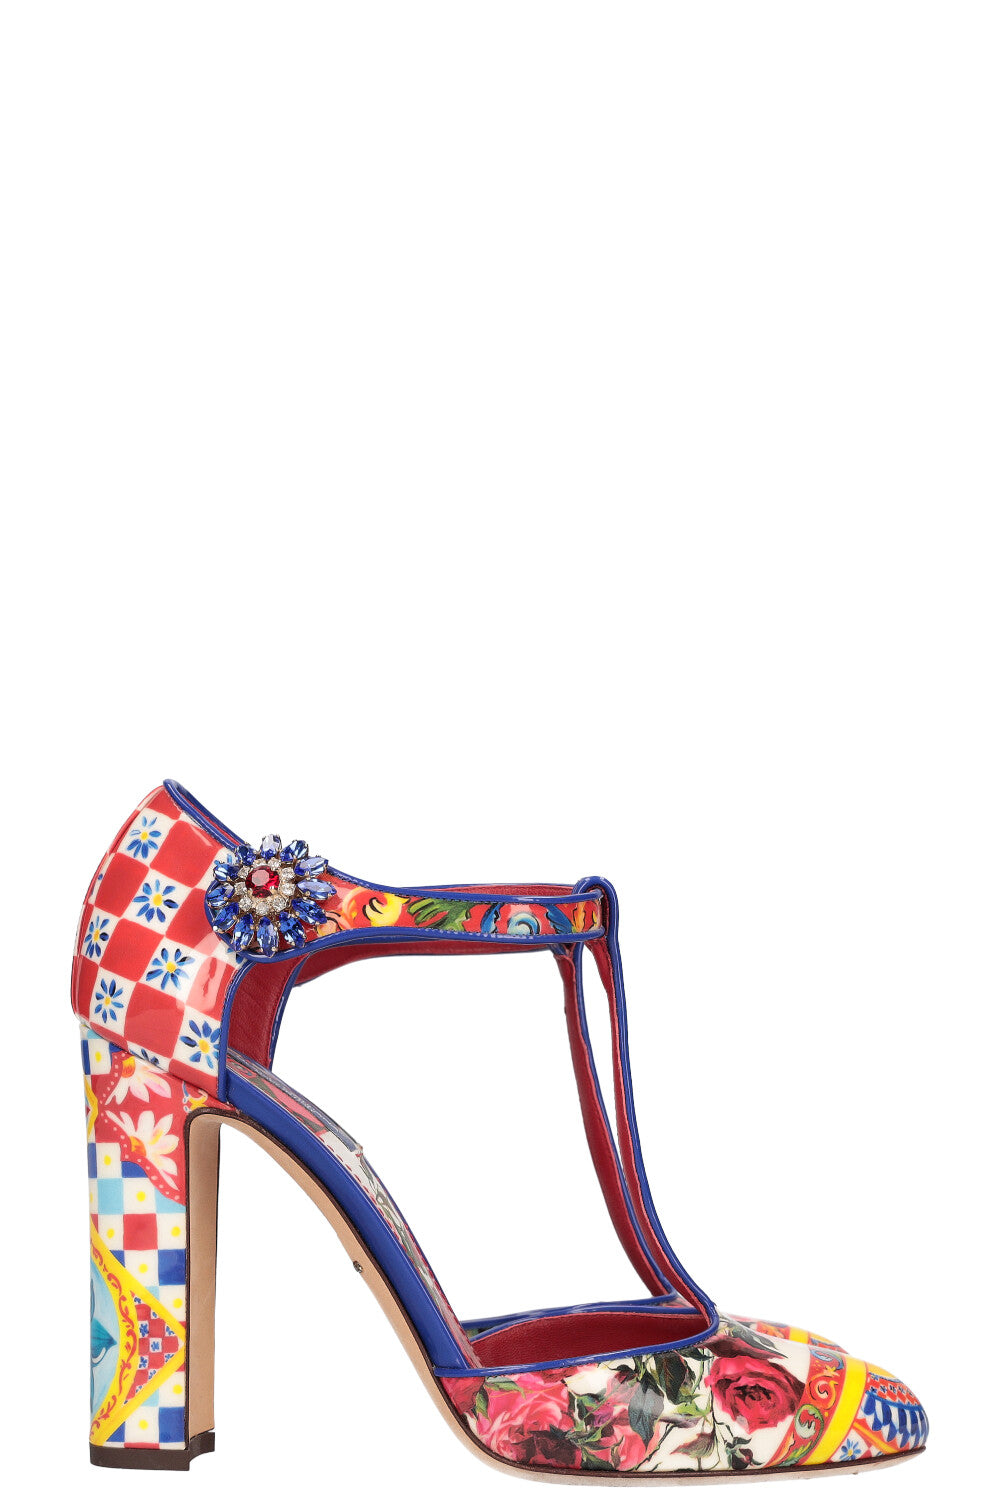 Dolce & Gabbana Black Patent Leather T-Strap Heels Sandals Shoes – Paris  Deluxe